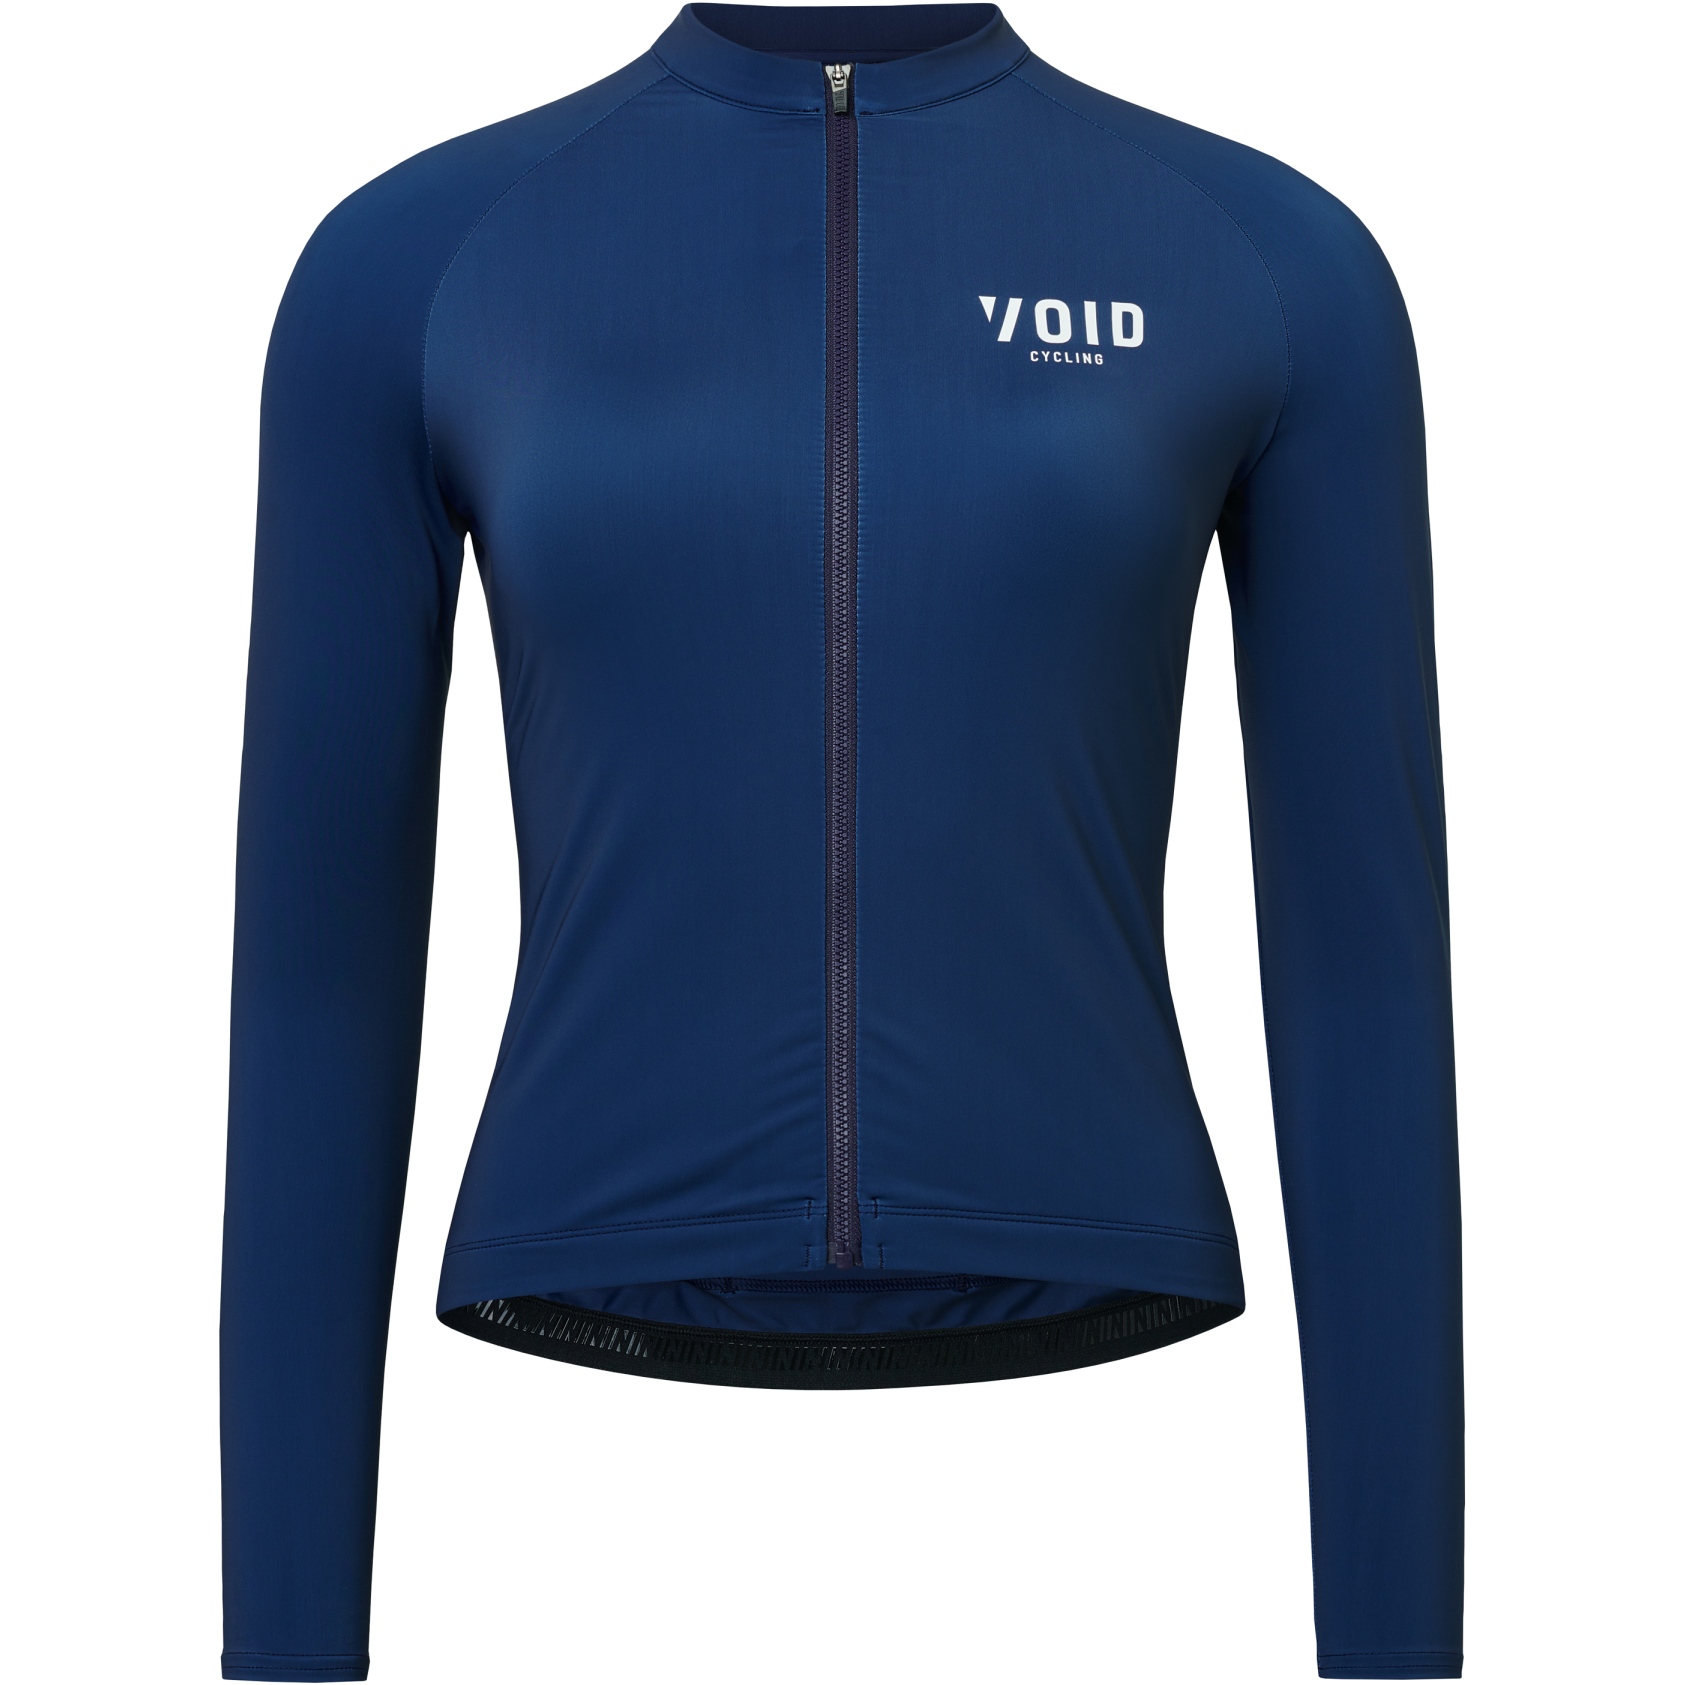 Produktbild von VOID Cycling Pure 2.0 Damen Langarmtrikot - Dark Blue